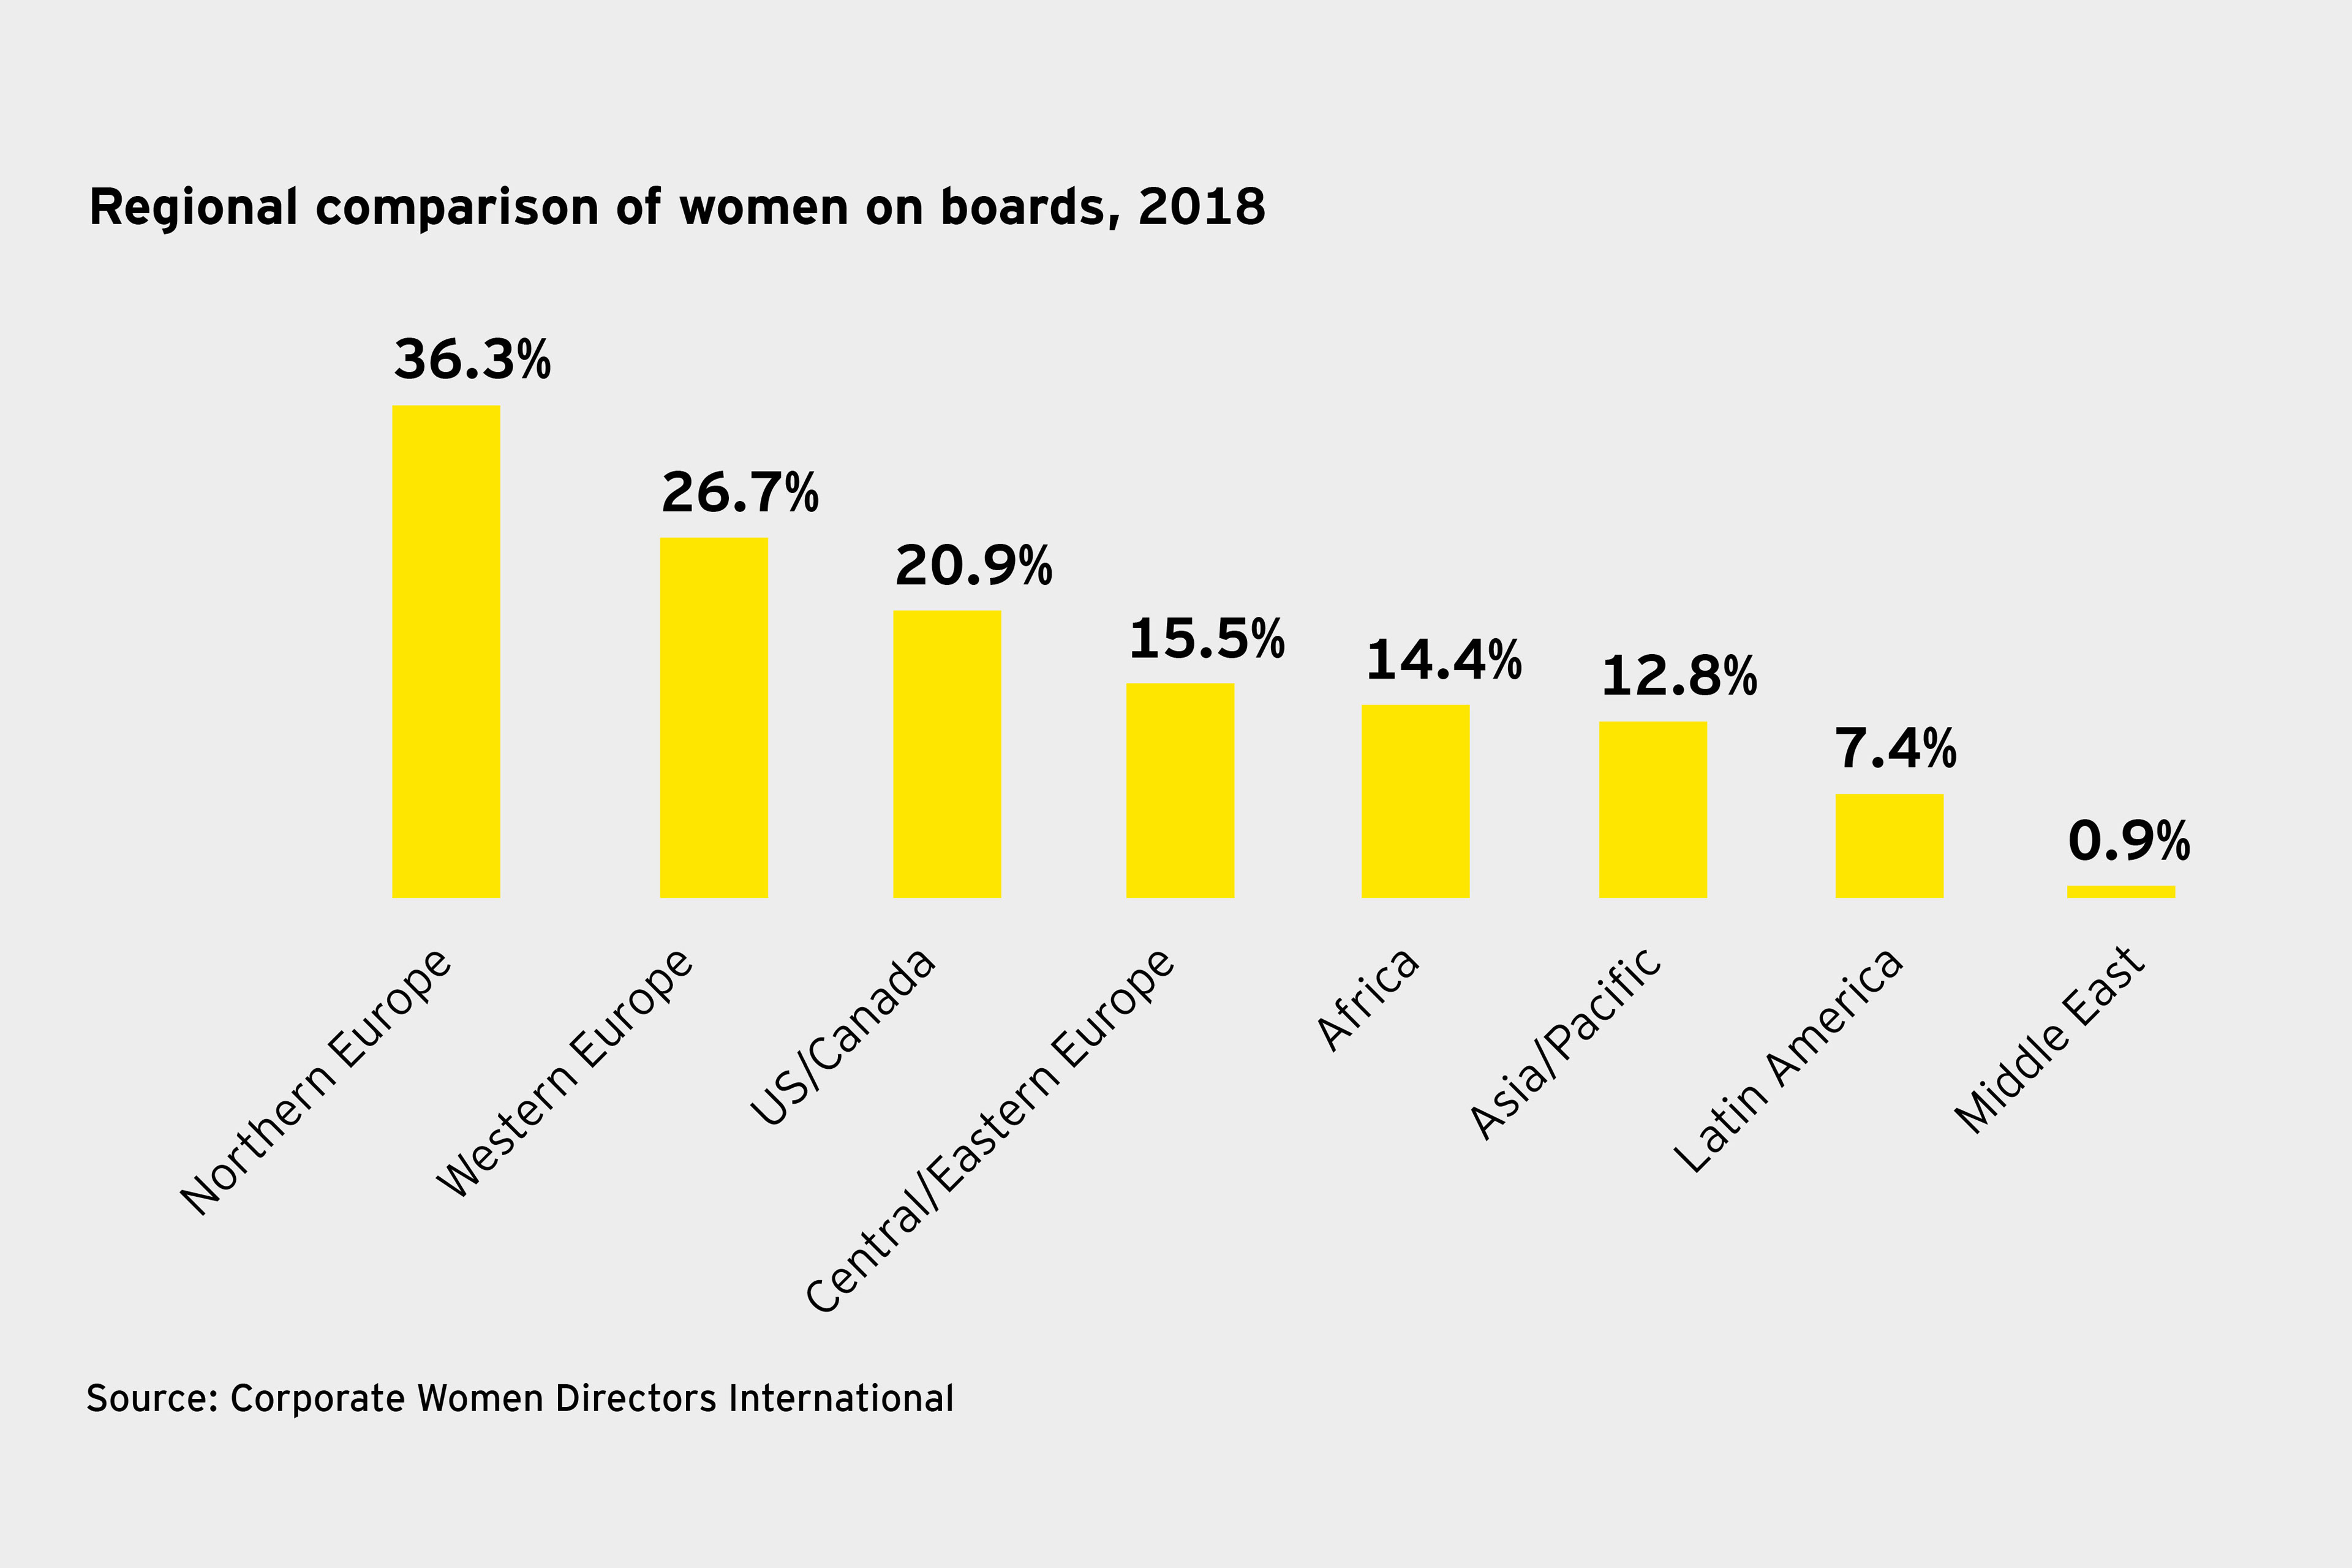 Regional comparison of women on boards info graph